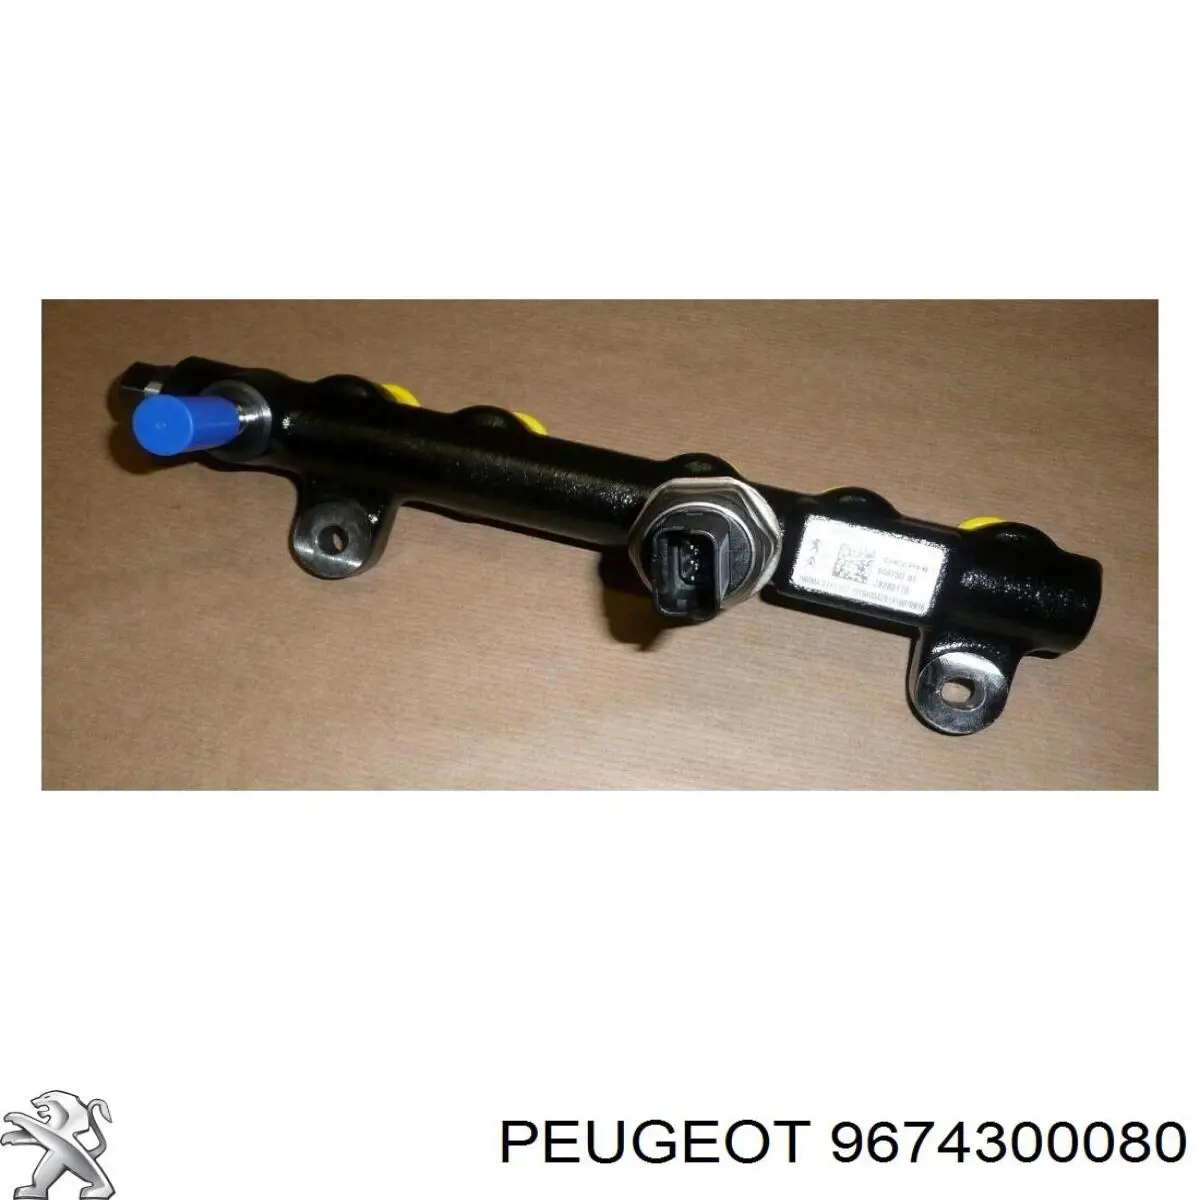 9674300080 Peugeot/Citroen distribuidor de combustível (rampa)